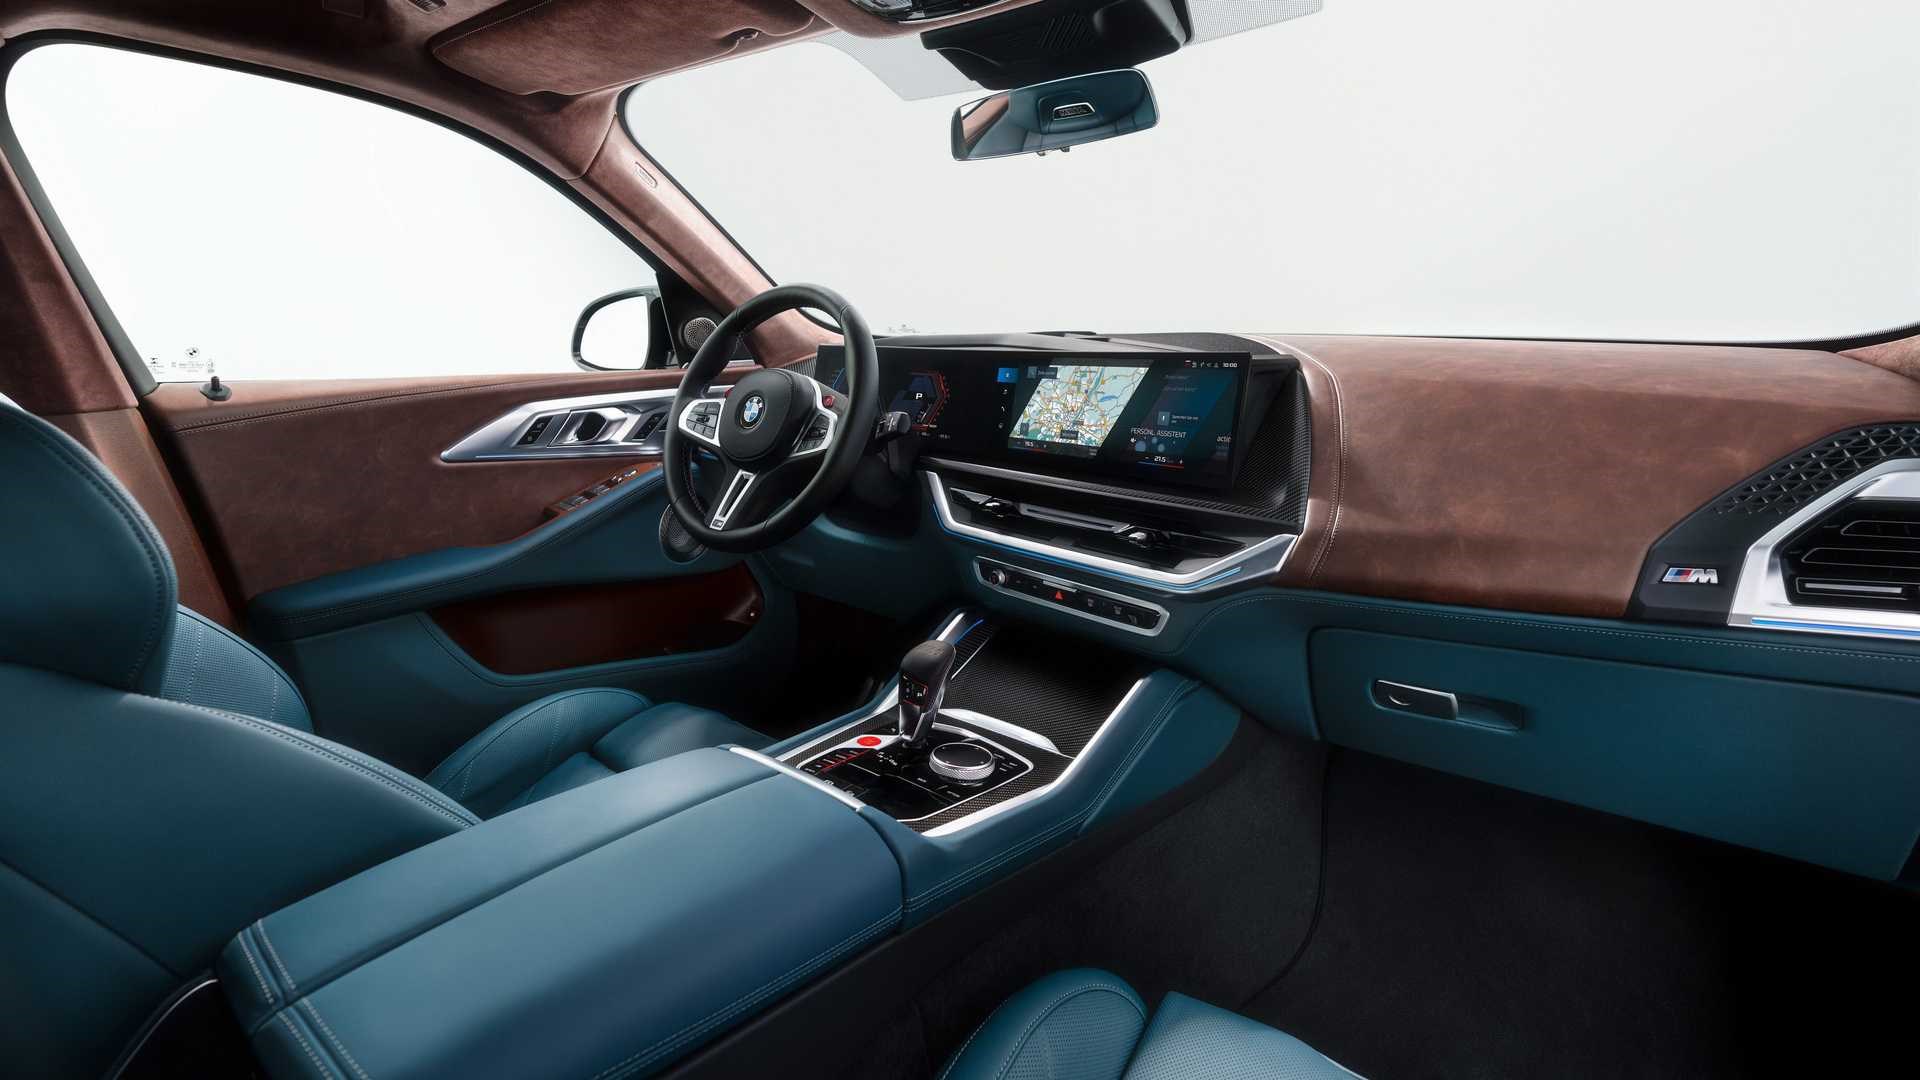 Yeni 2023 BMW XM tanıtıldı: İşte tasarımı ve özellikleri